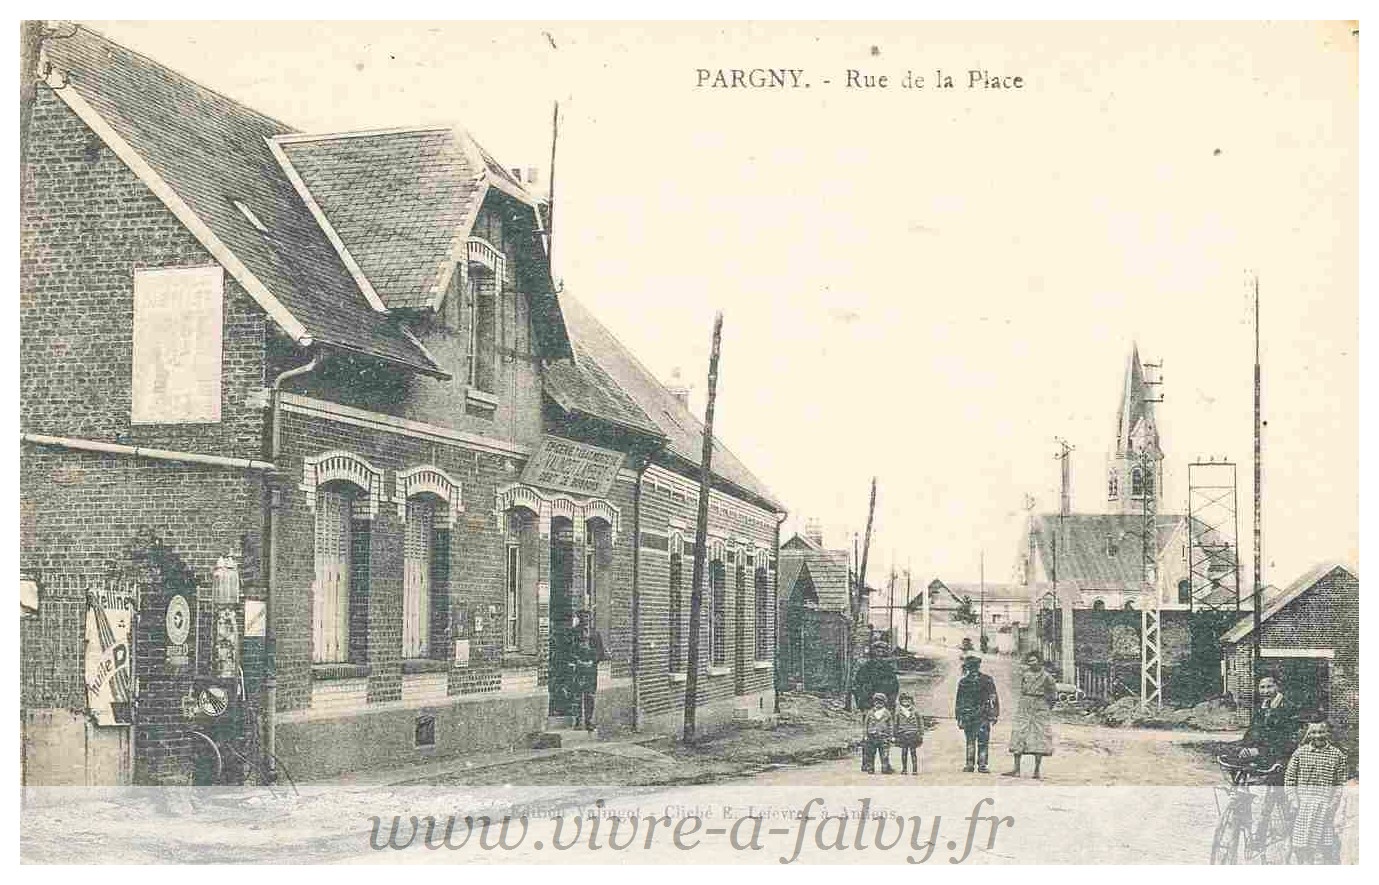 Pargny - Rue de la Place